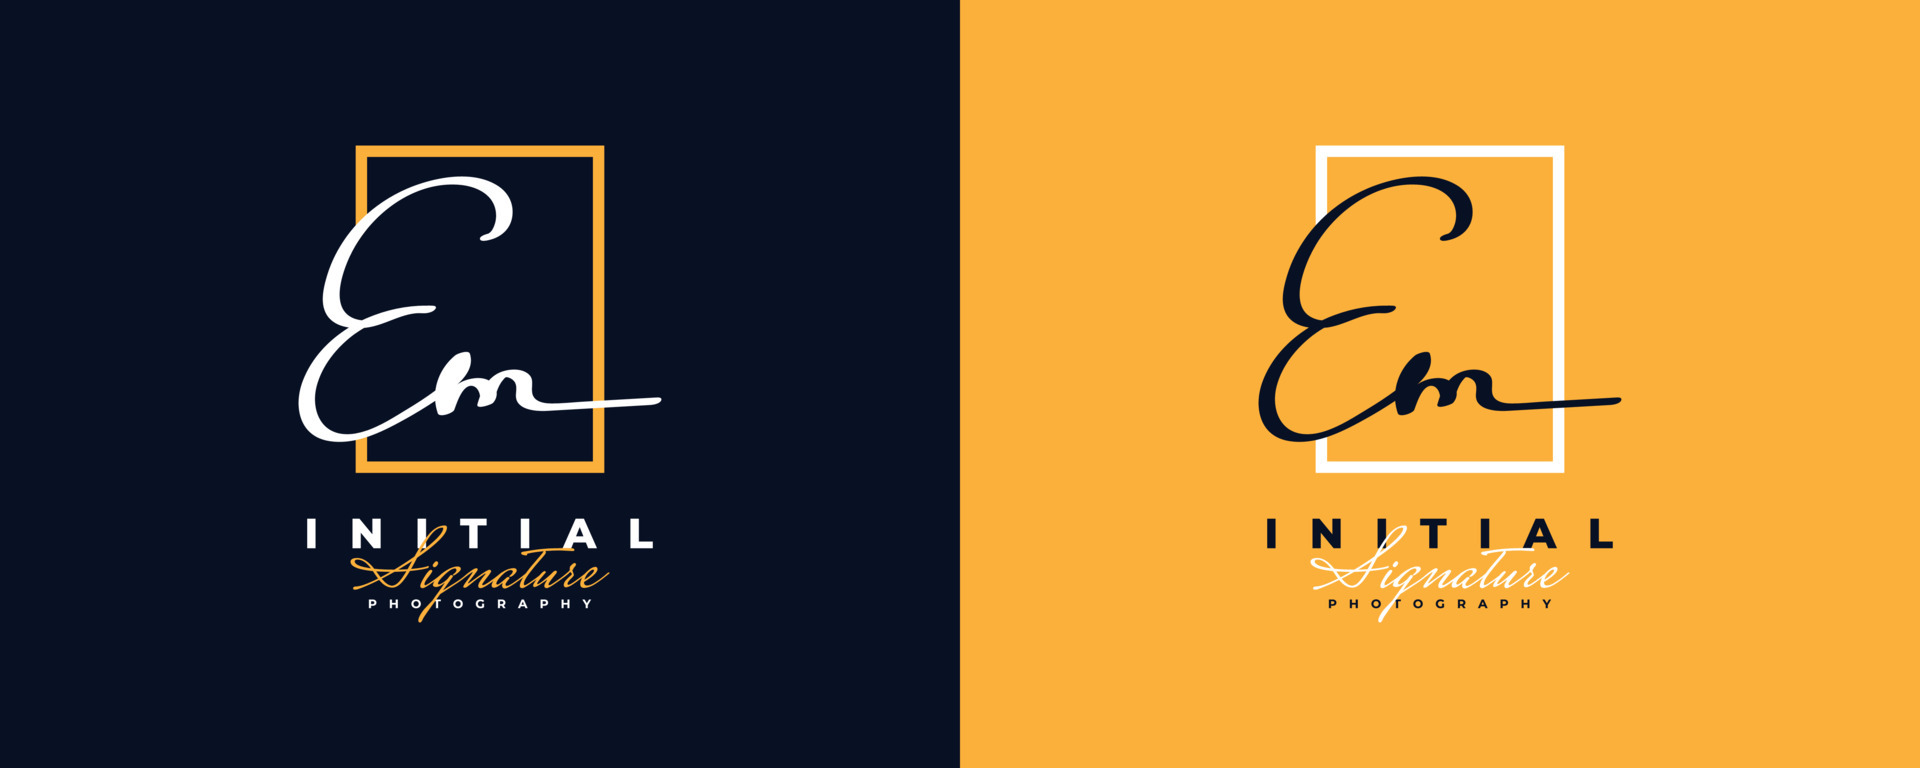 Premium Vector  Initial eb logo design in minimalist style eb signature  logo or symbol for fashion jewelry boutique